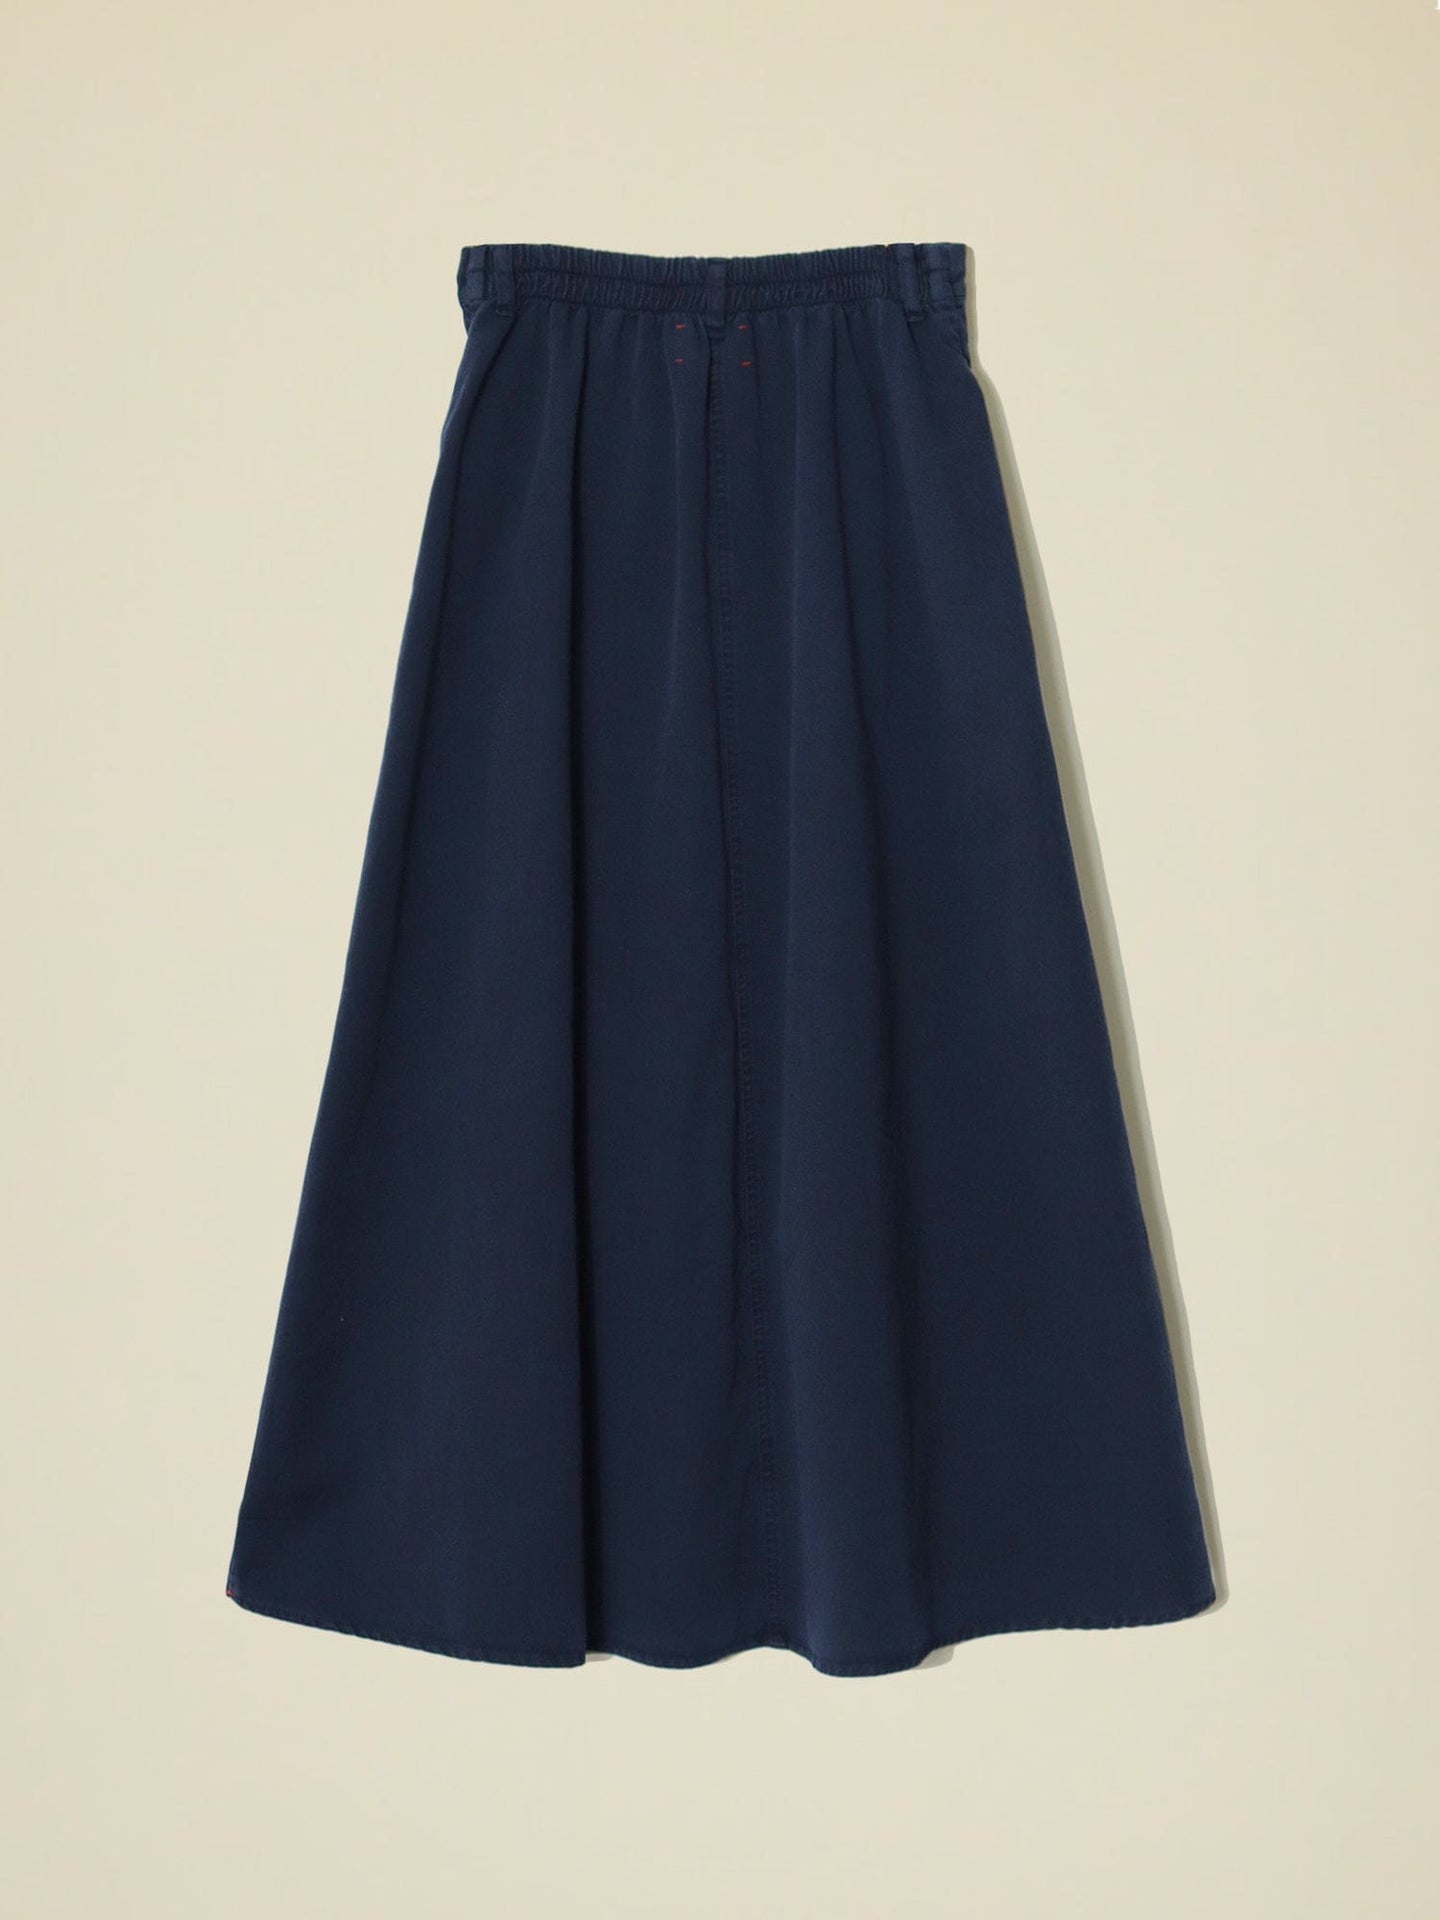 Xirena Skirt Navy Spence Skirt